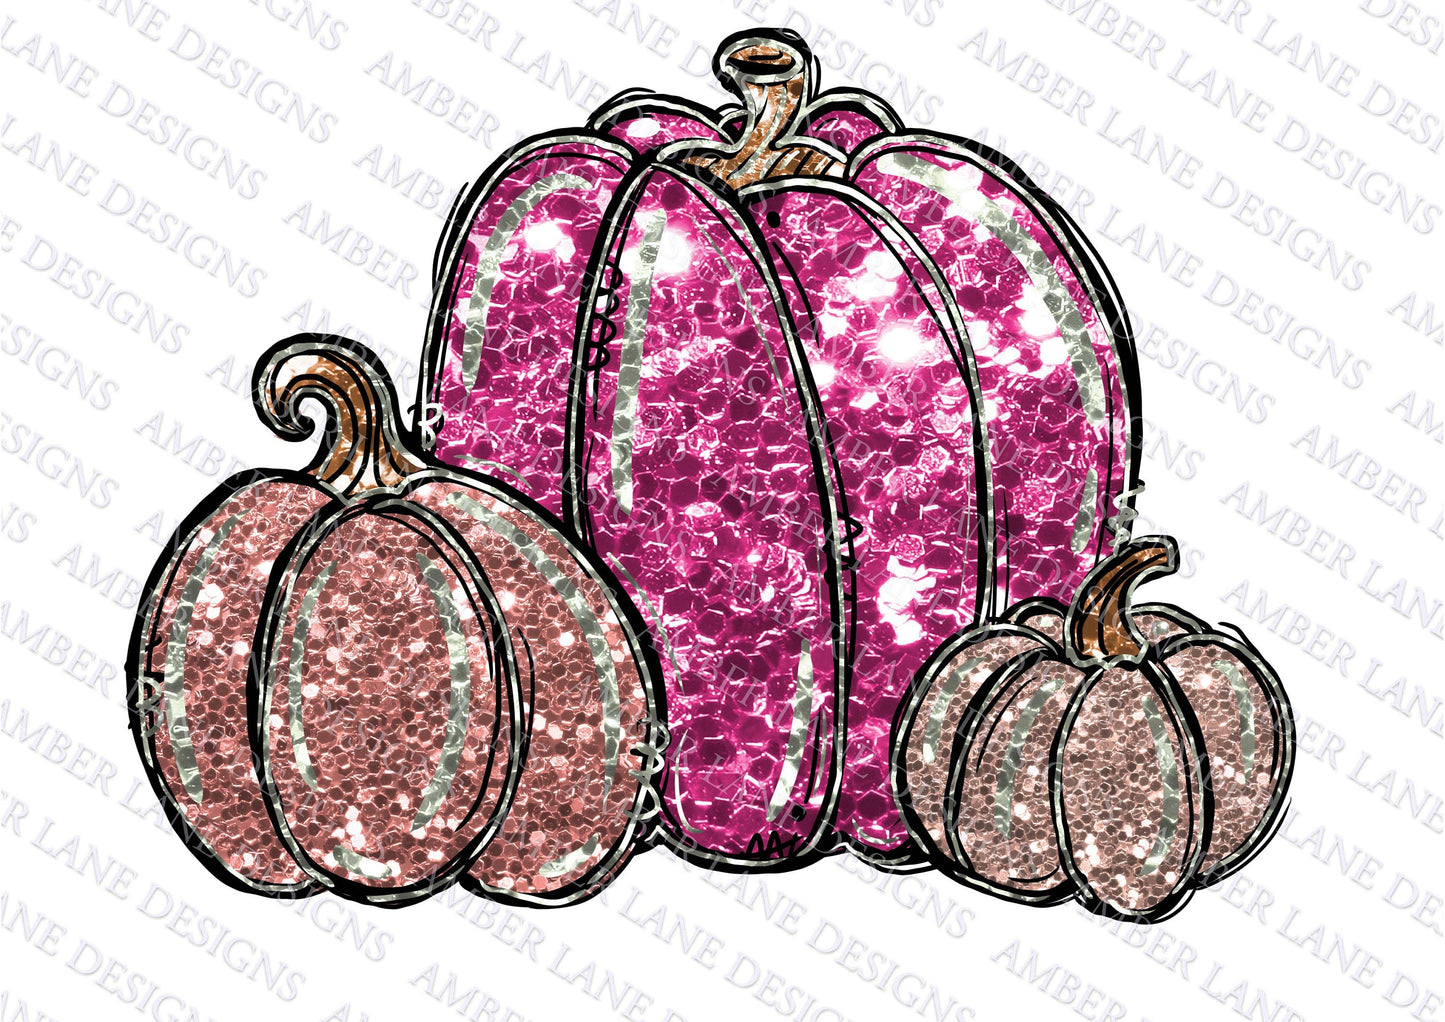 Glitter Bling pink October thanksgiving pumpkins, png file -INSTANT DOWNLOAD